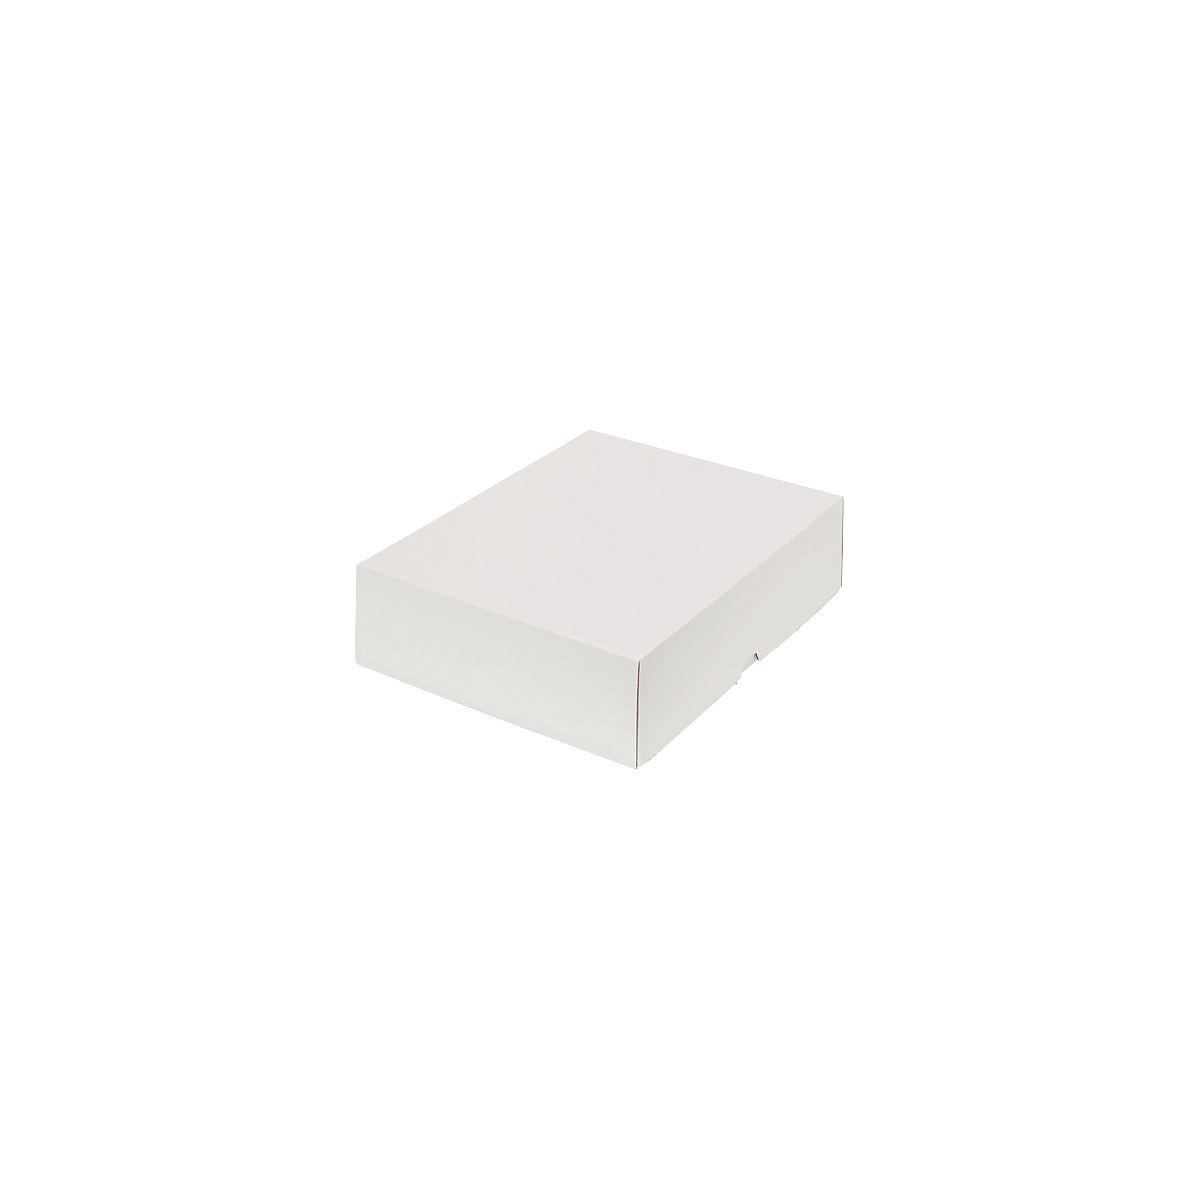 Stülpdeckelkarton, zweiteilig, Innenmaße 320 x 240 x 80 mm, A4+, weiß, ab 20 Stk-15